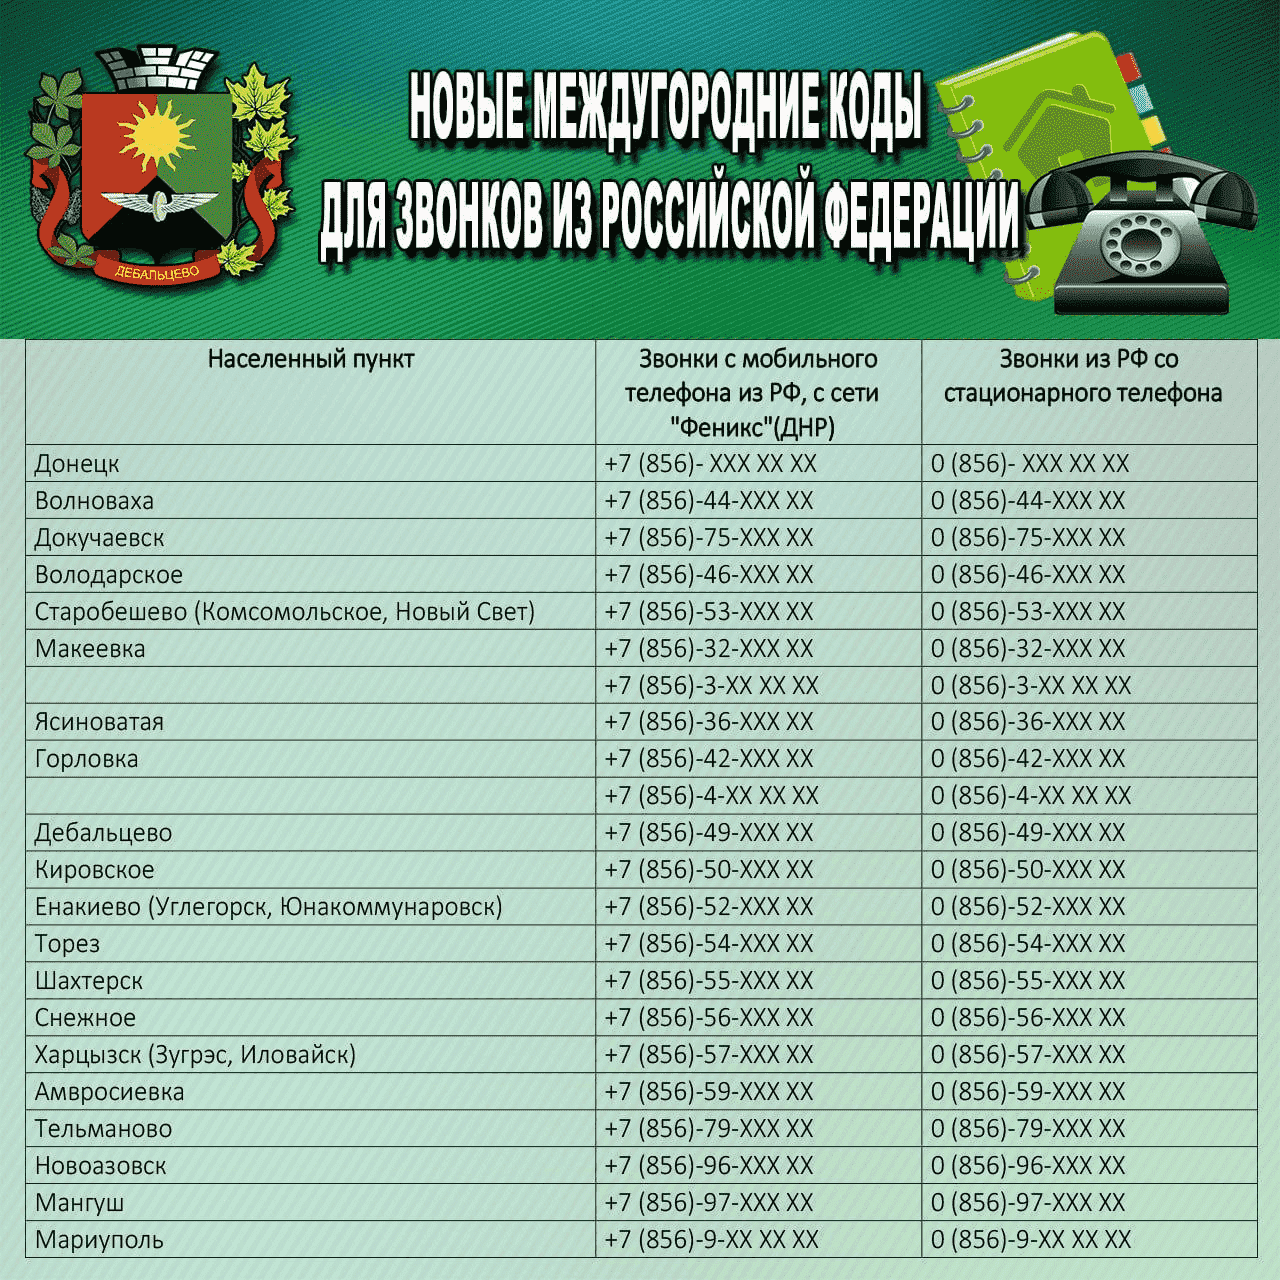 Код россии для мобильного телефона телеграмм фото 93